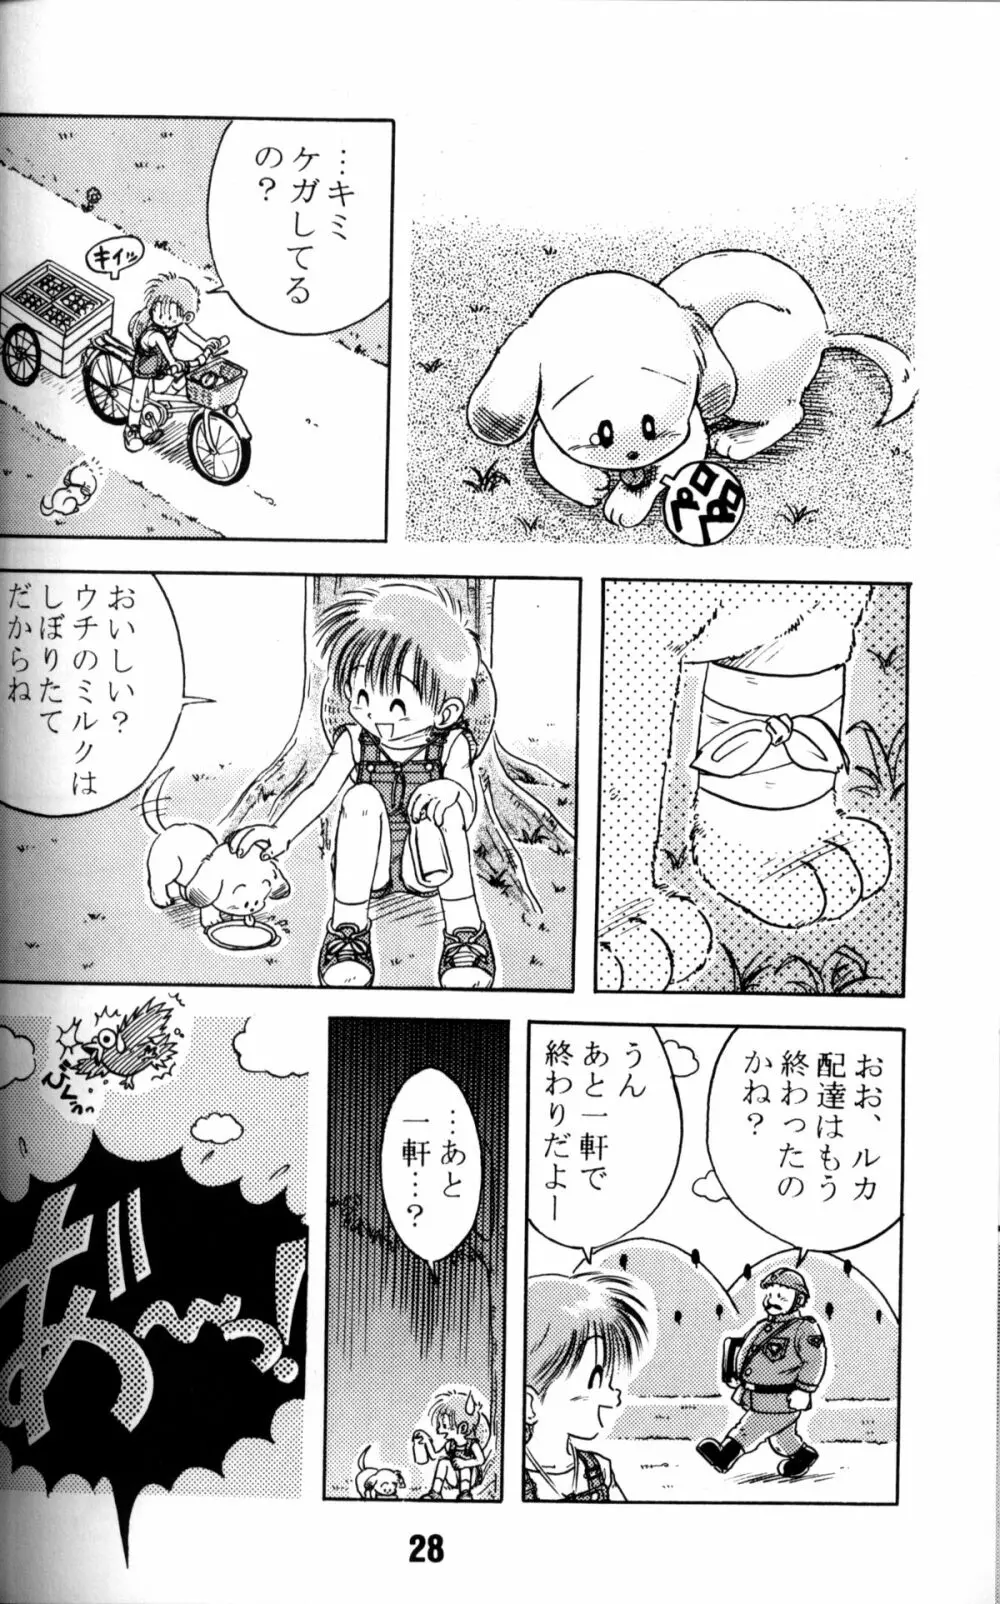 Anthology - Nekketsu Project - Volume 1 'Shounen Banana Milk' Page.27